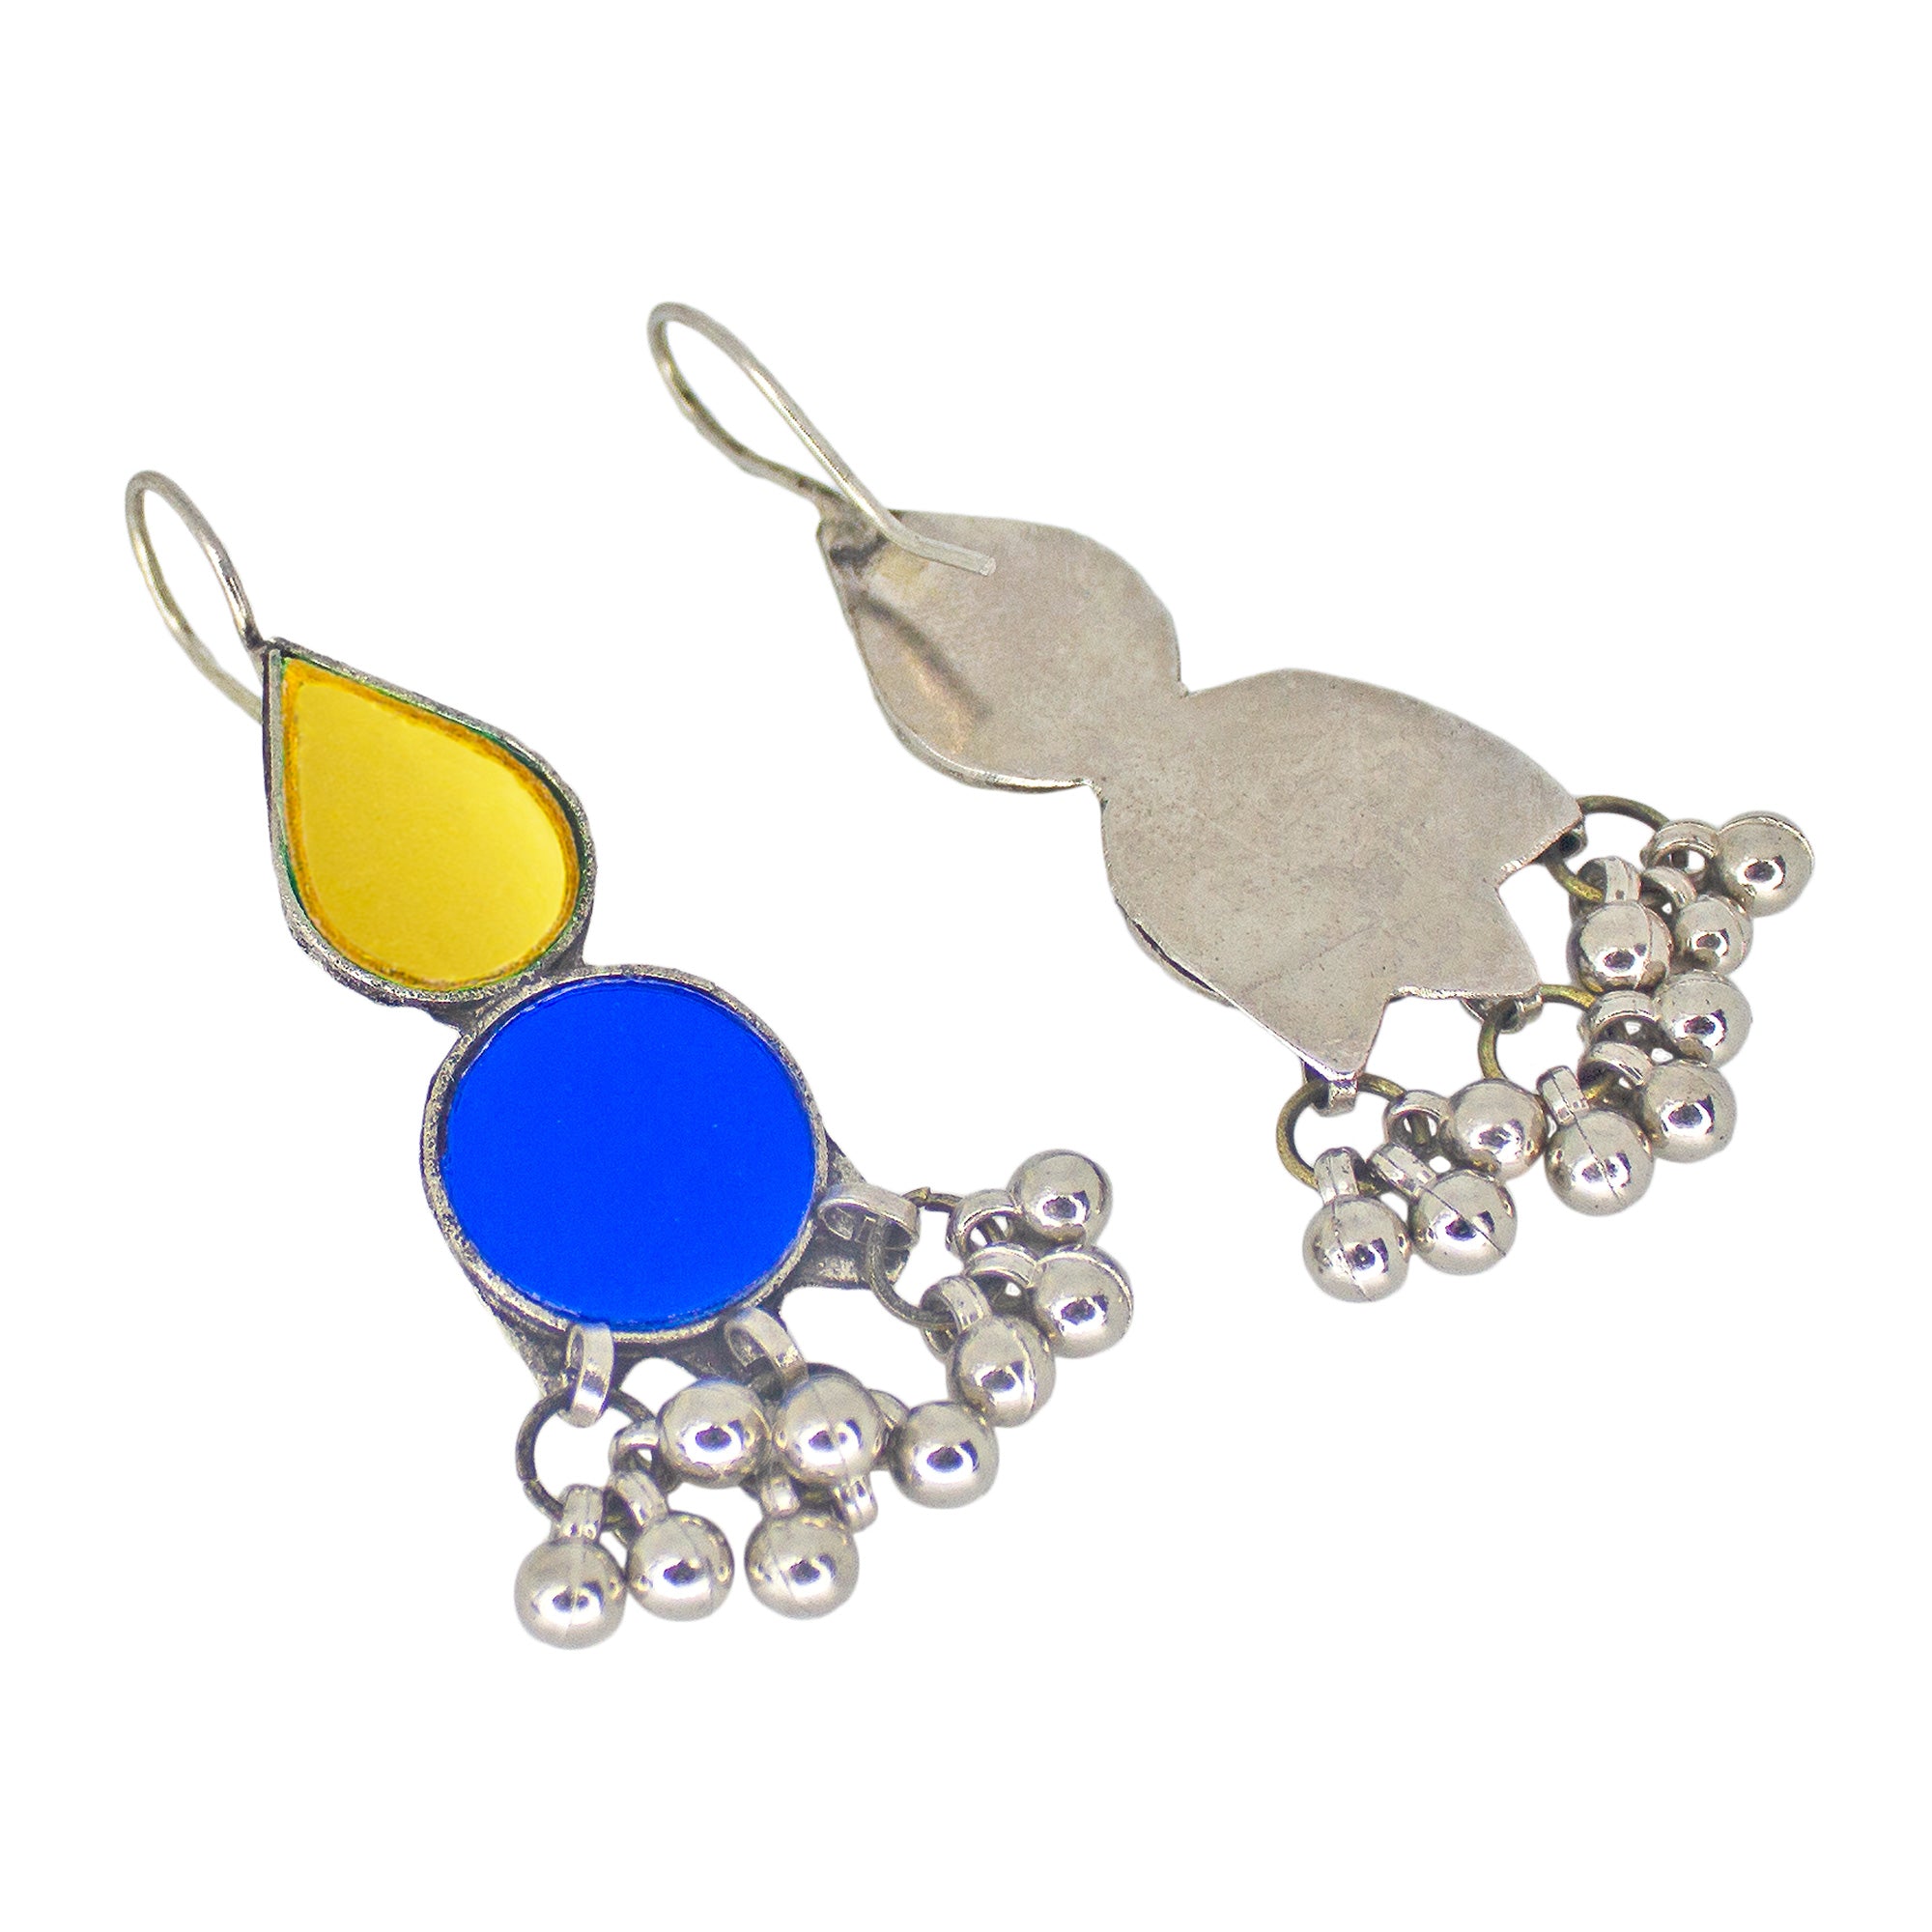 Abhinn Afghani Silver Plated Geometrical Yellow-Blue Glass Dangler Earrings For Women